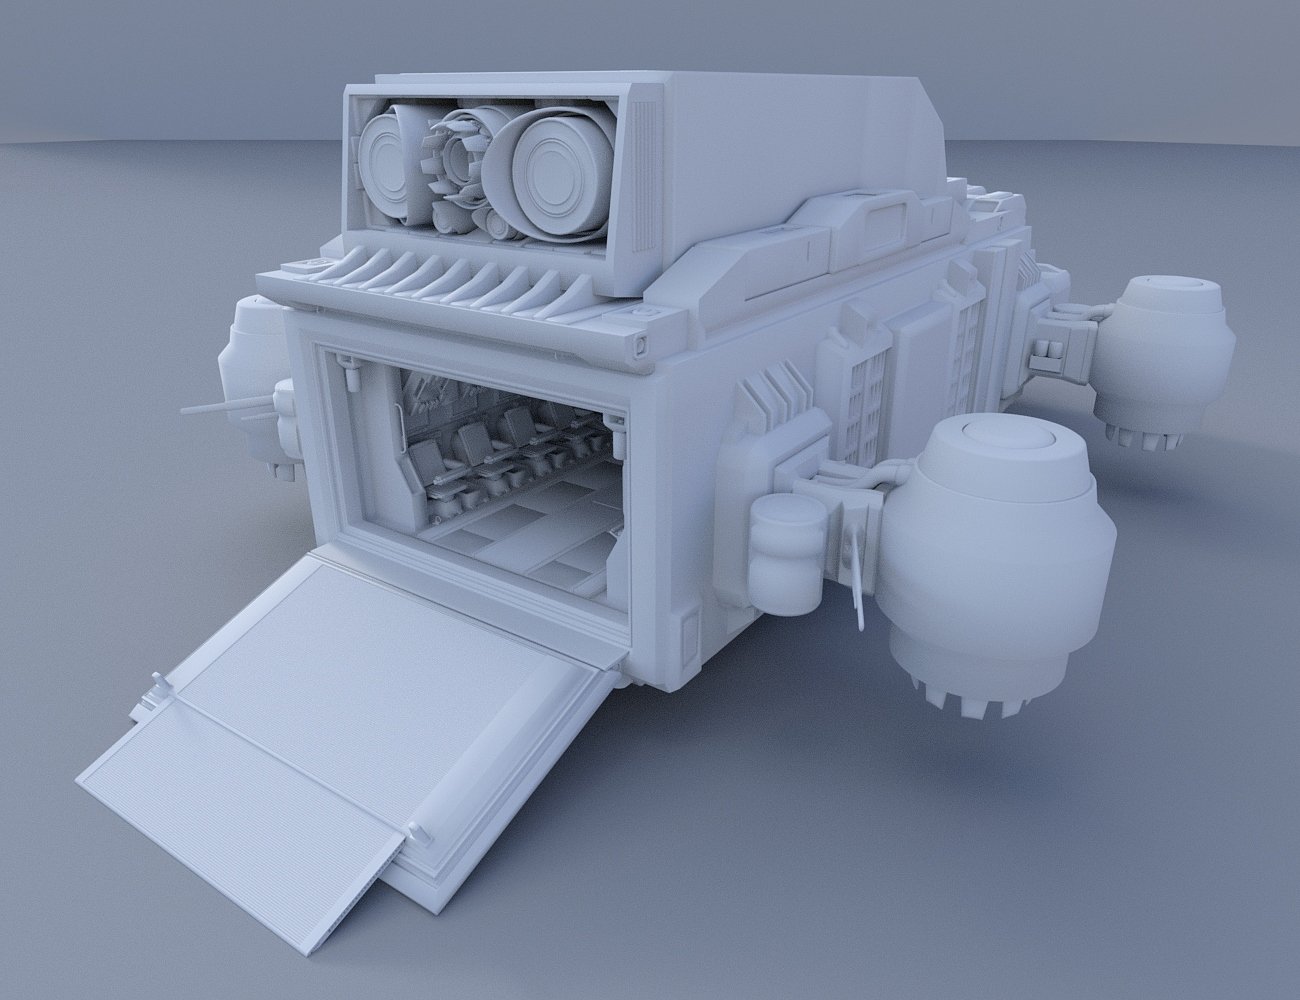 Carrier 01 by: kerabera, 3D Models by Daz 3D